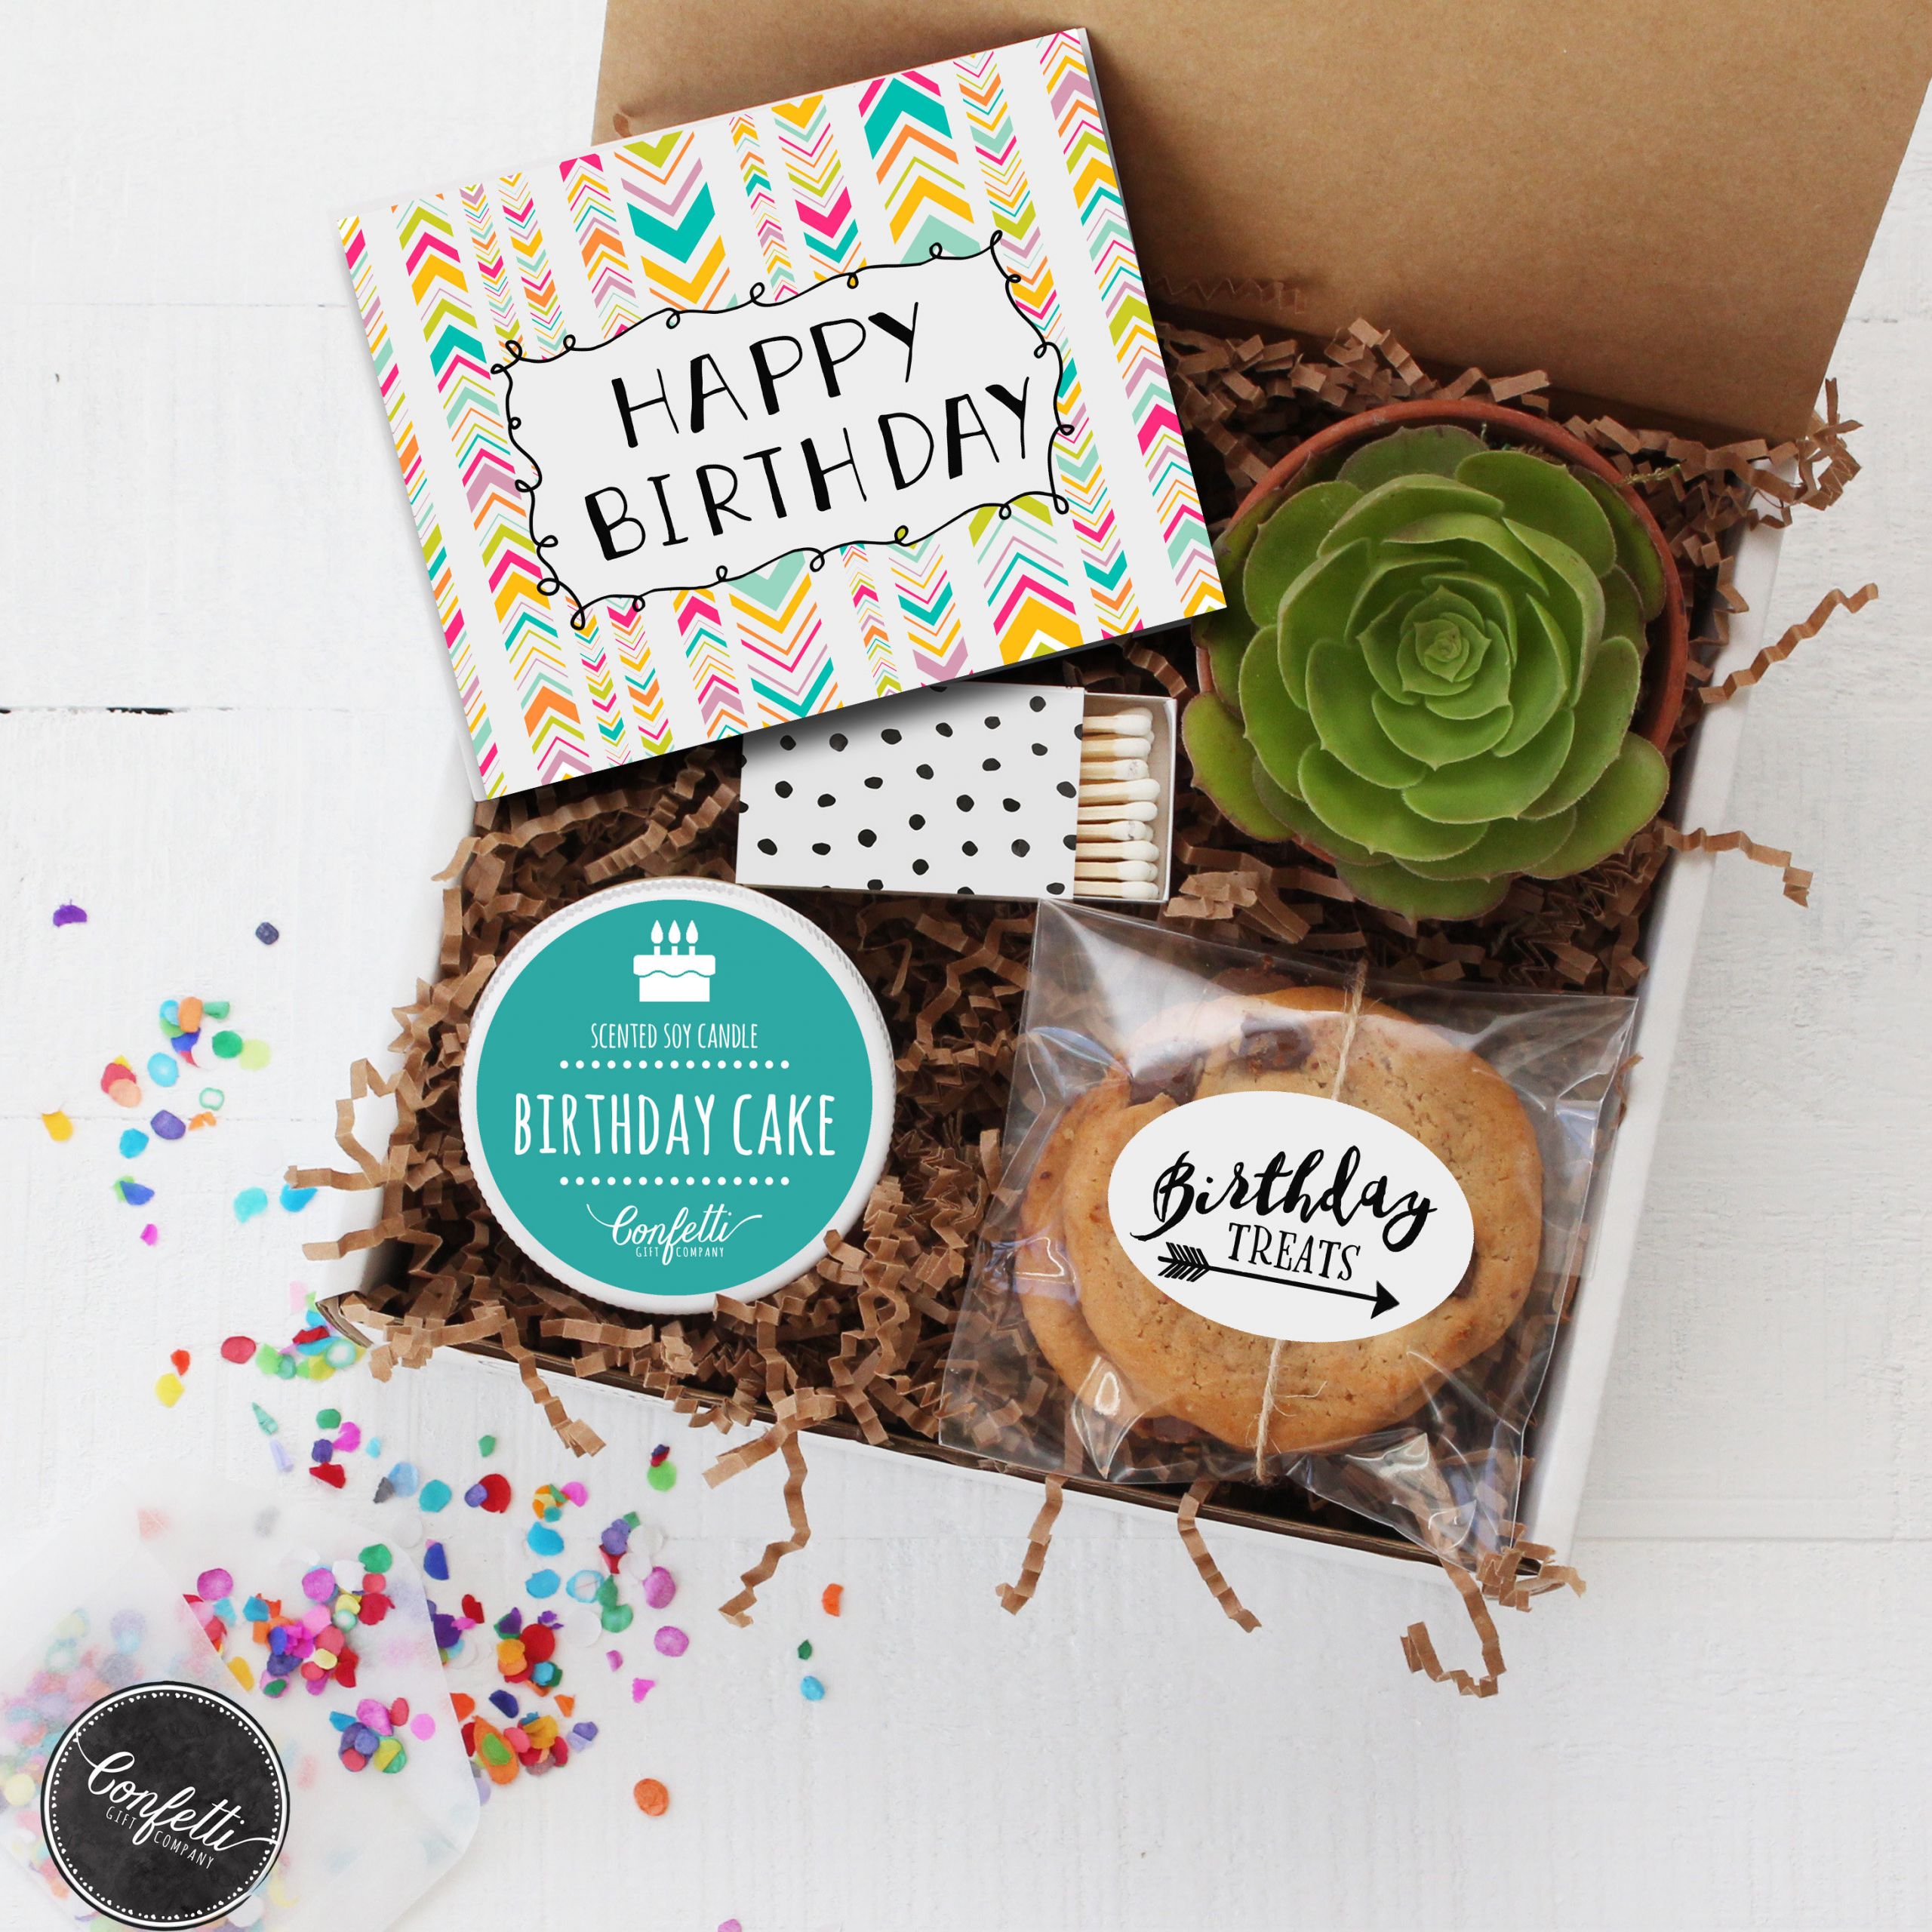 Send Birthday Gifts
 Happy Birthday Gift Box Send a Birthday Gift Birthday in a